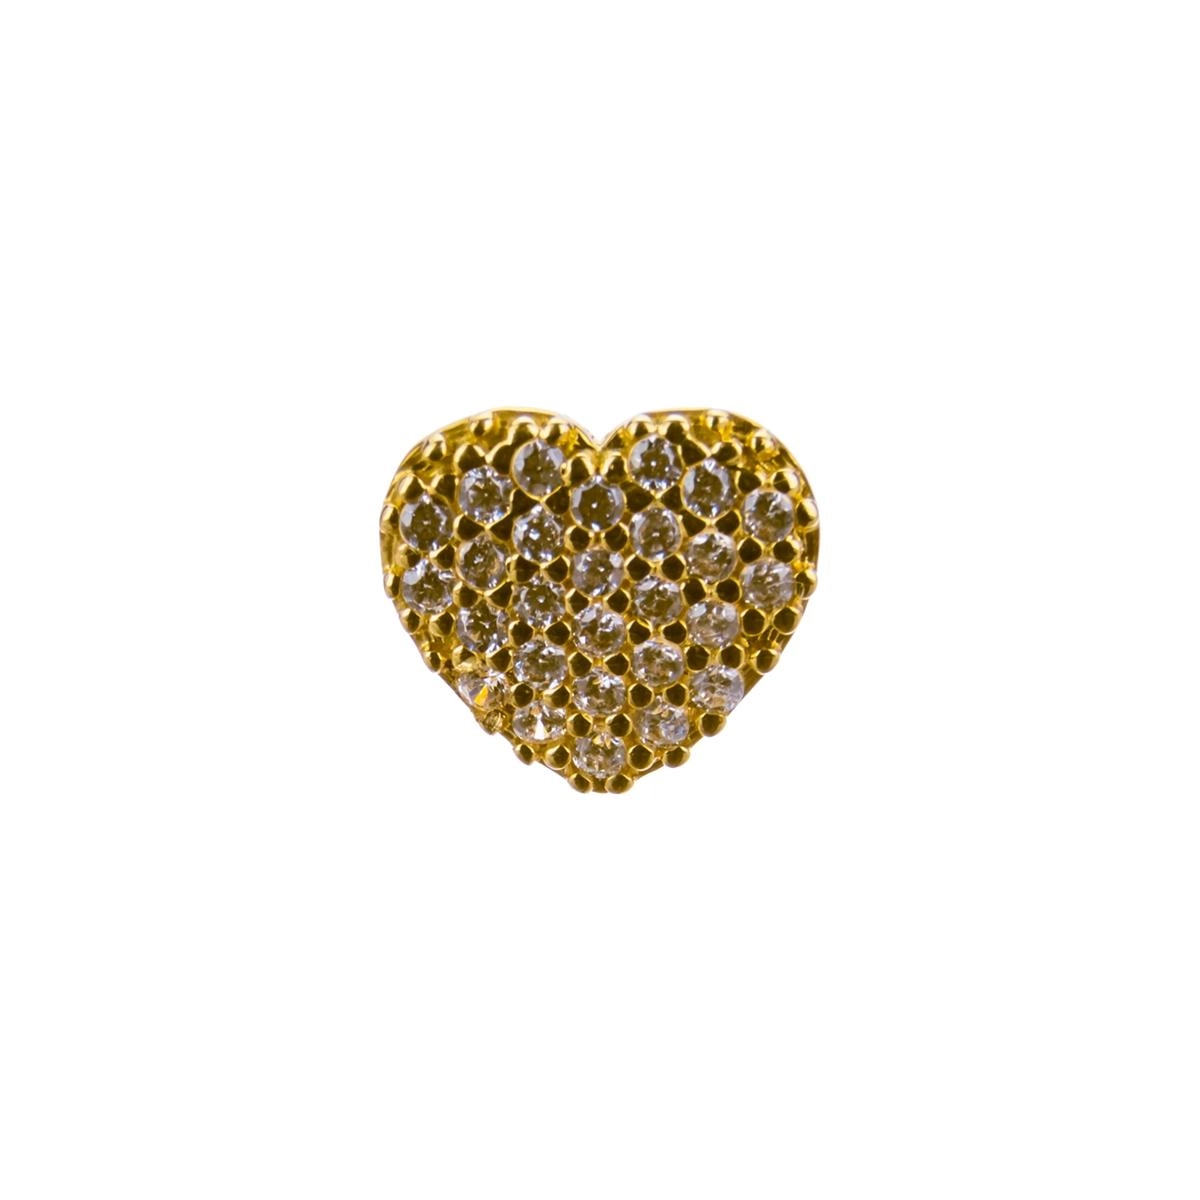 Brinco Ouro 18k Chuveiro Coração 1.45 gramas